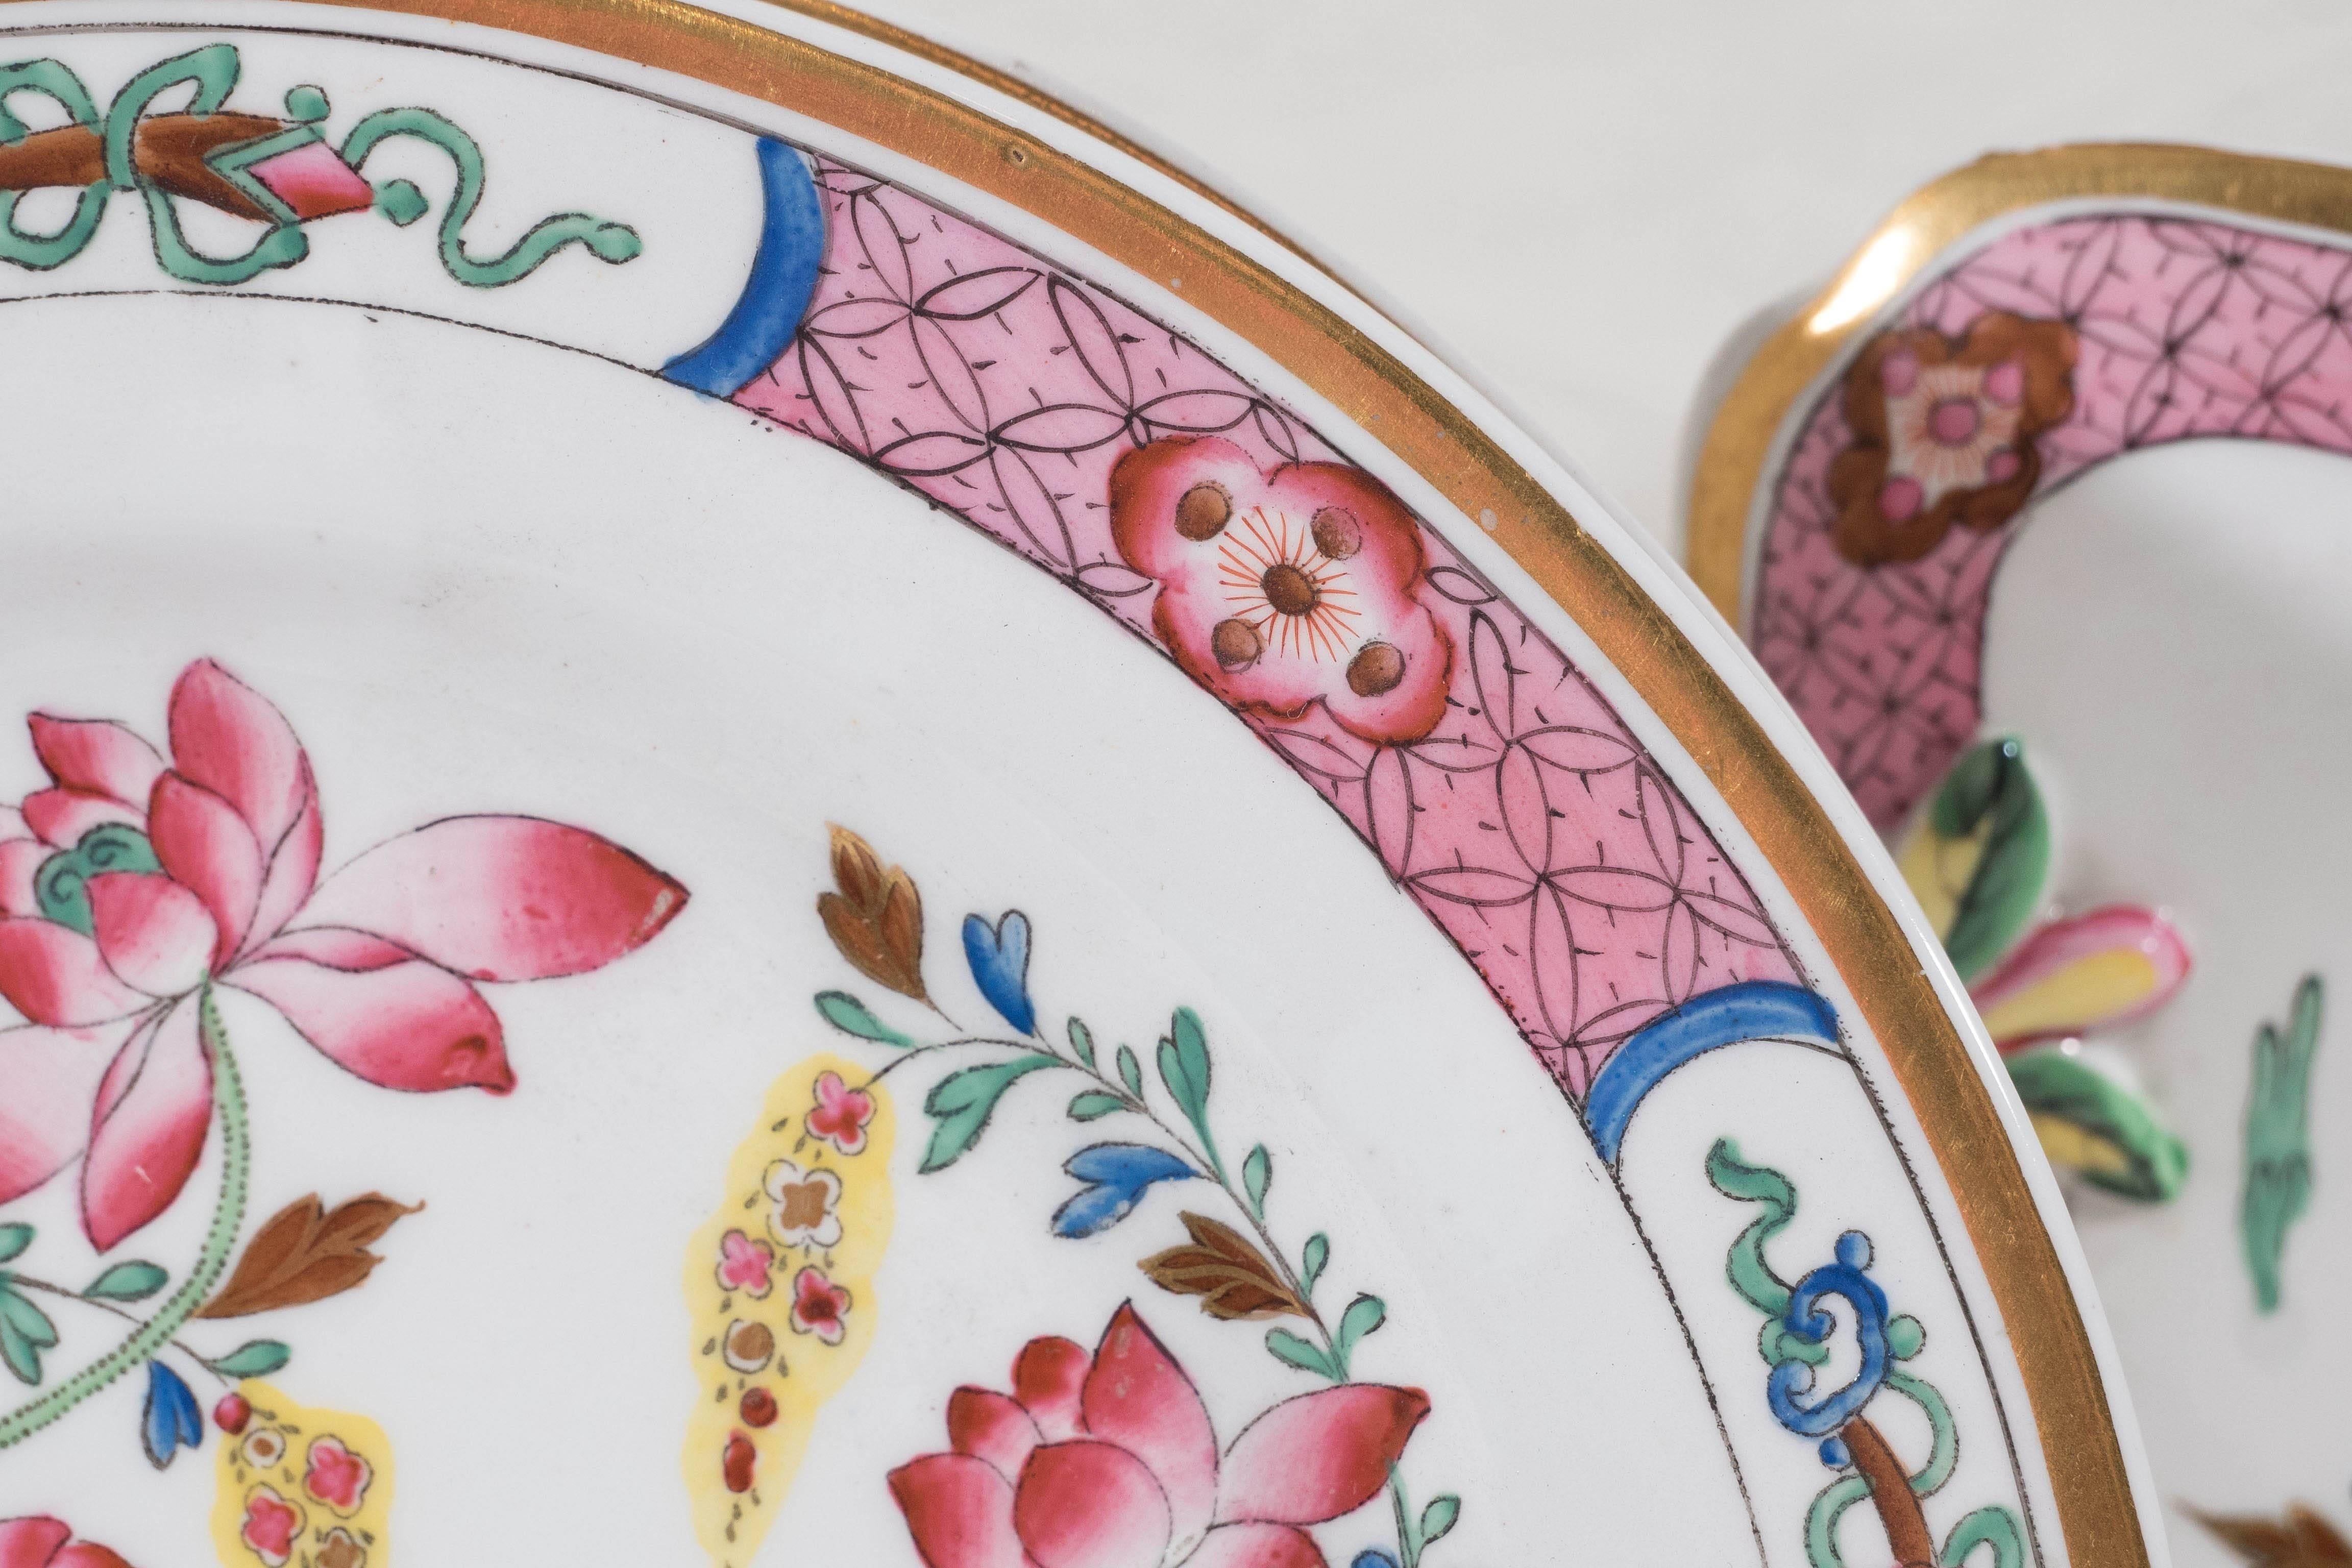 16 rosafarbene antike Porzellanteller mit Mandarin-Enten-Muster aus der Zeit um 1820 (Emailliert)